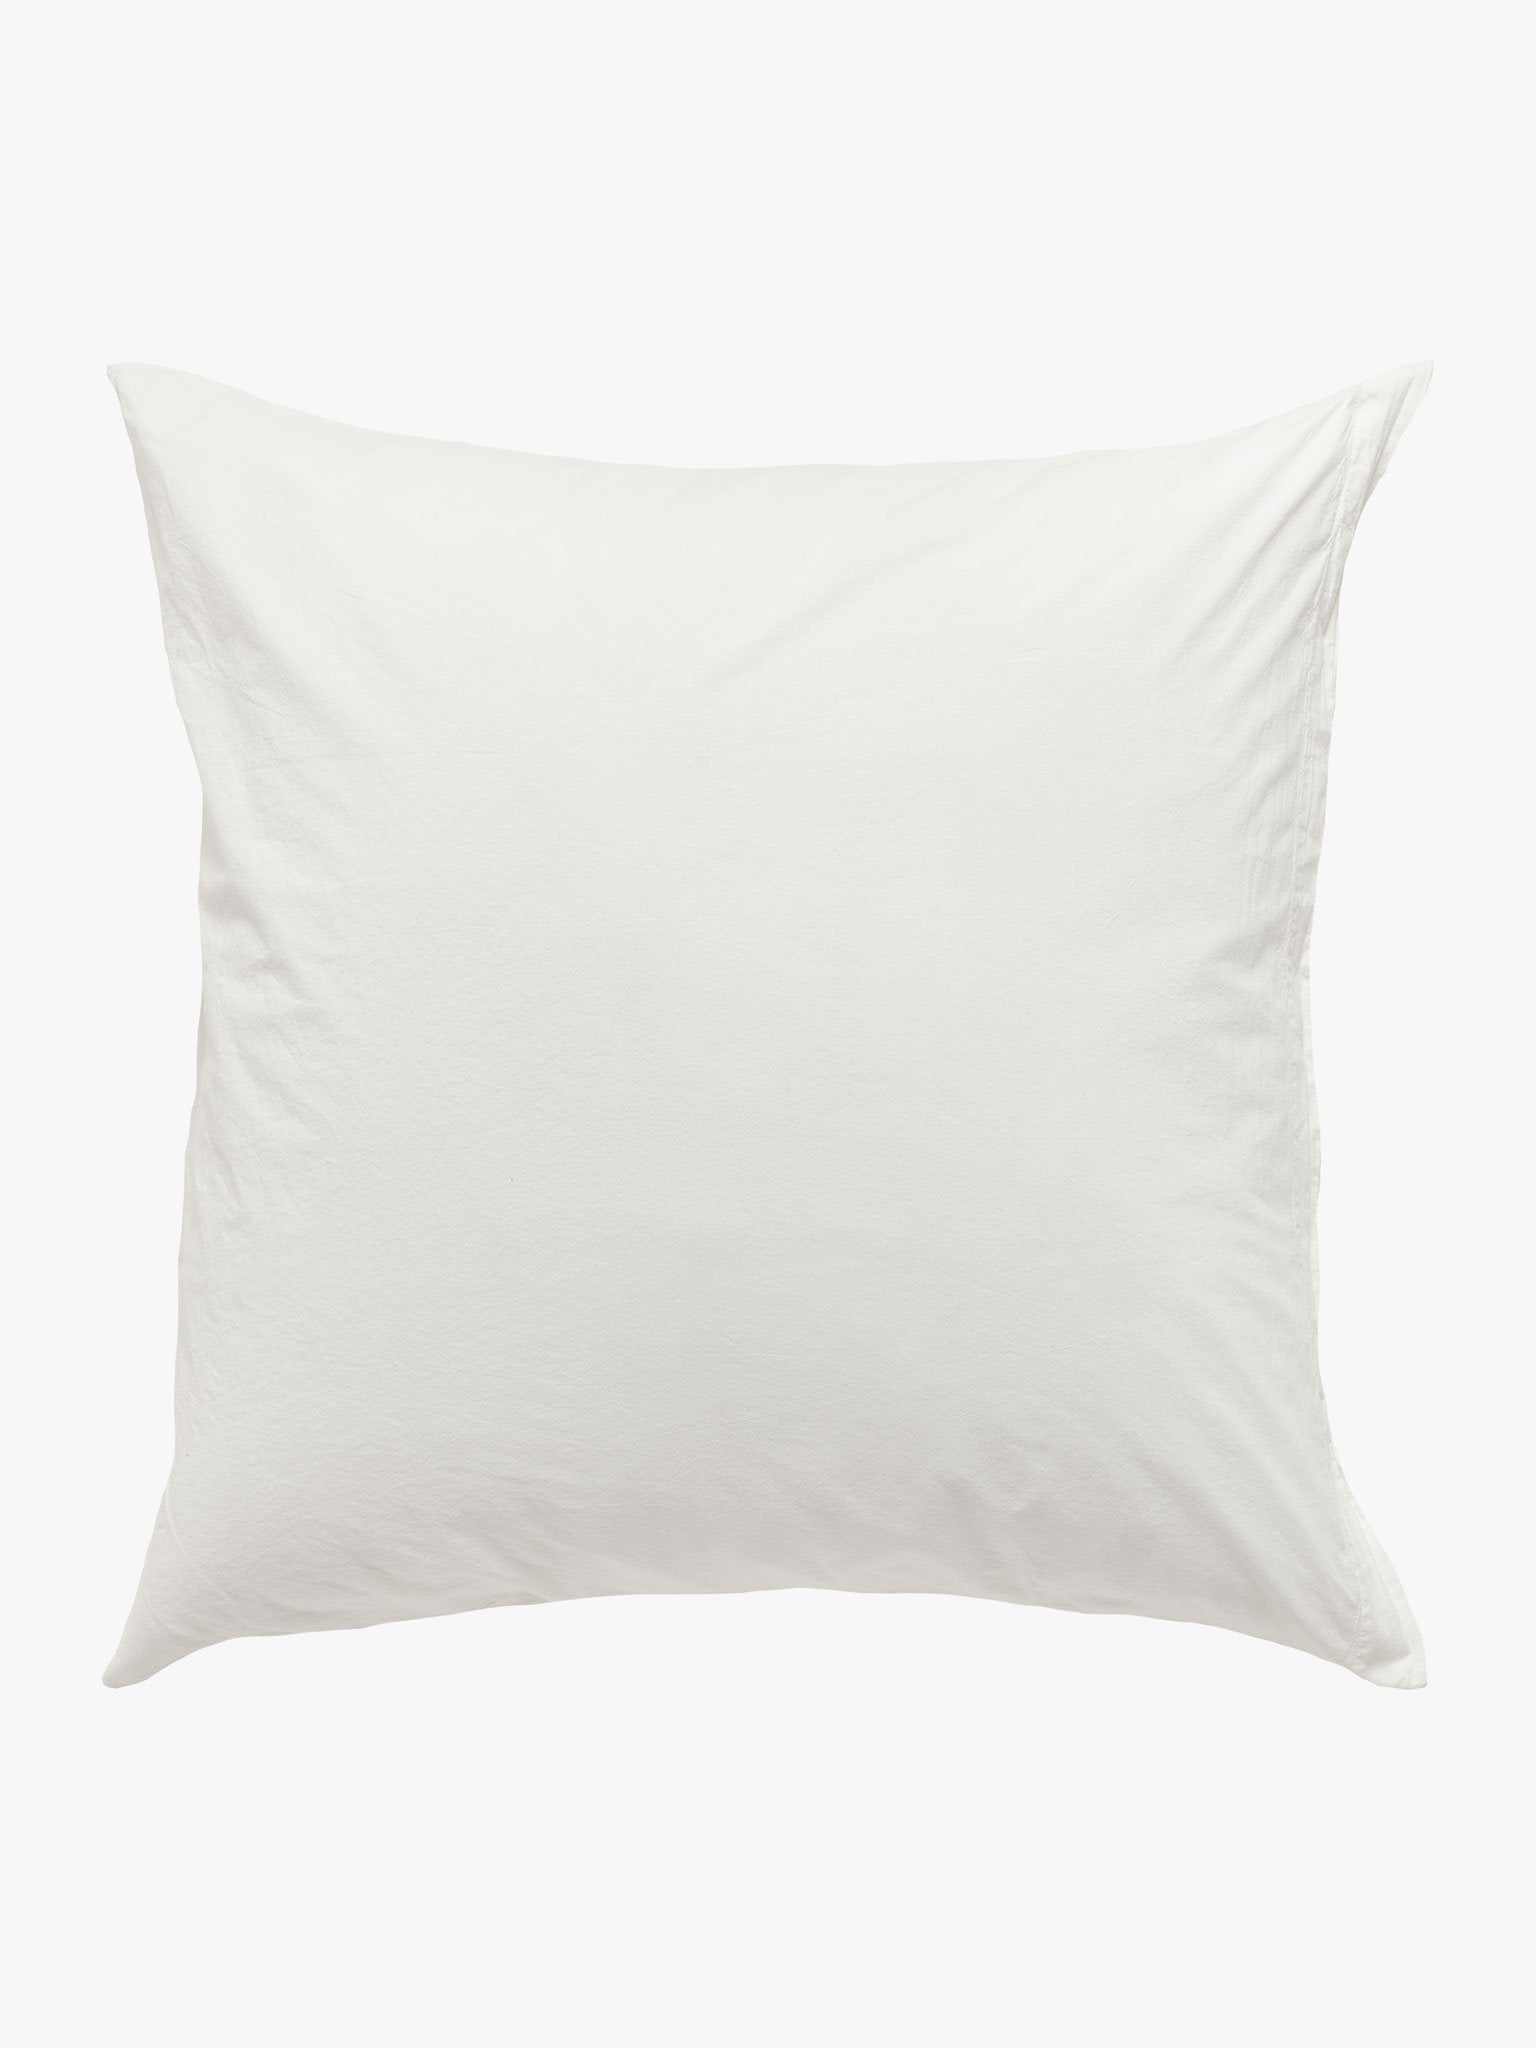 Nordic White Pillowcase Pillowcase AW18 European 